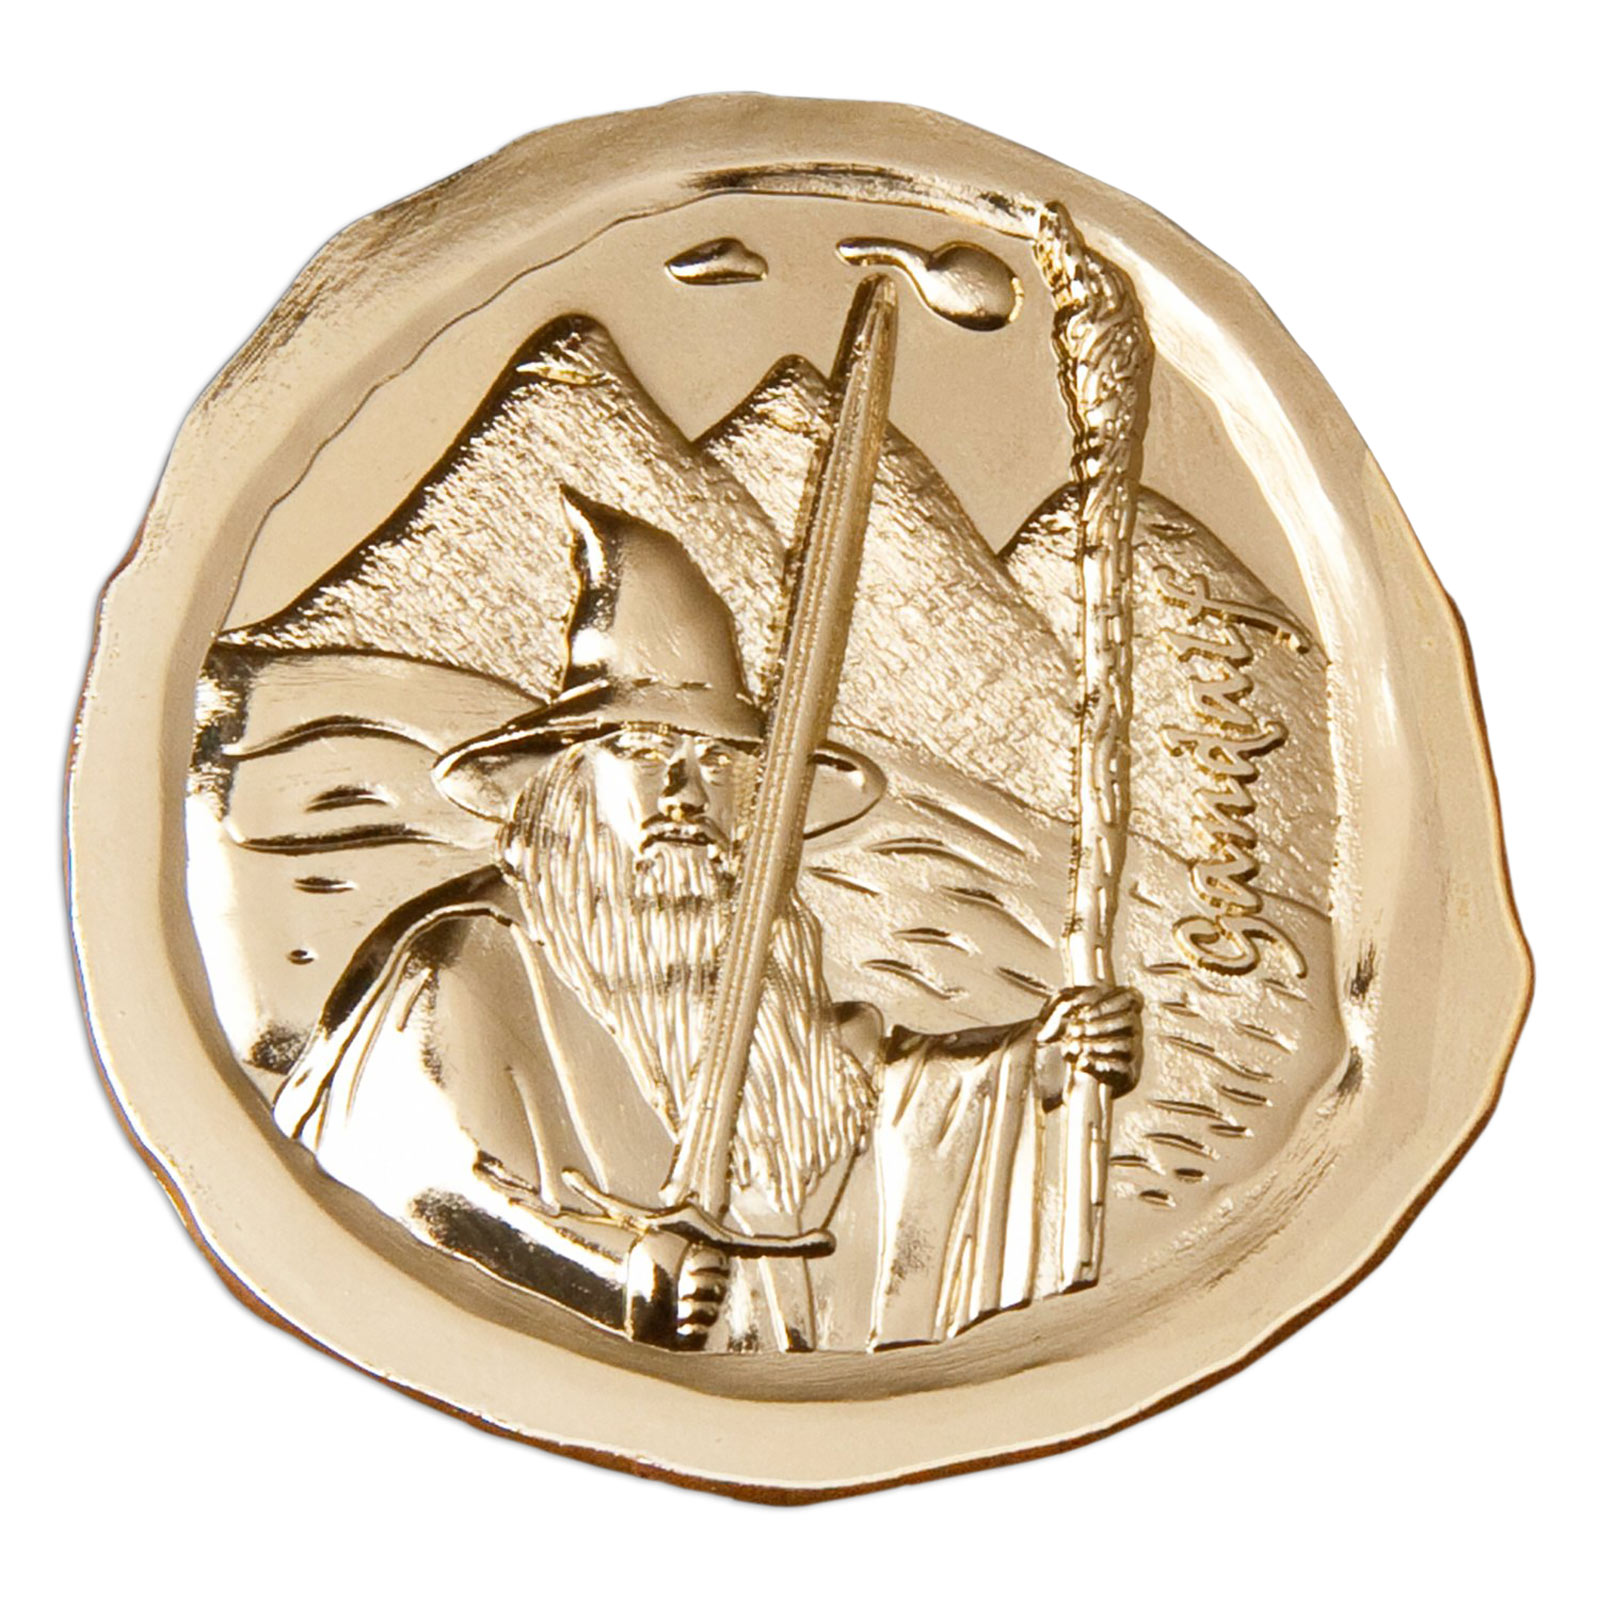 The Hobbit - Gandalf Collectible Coin